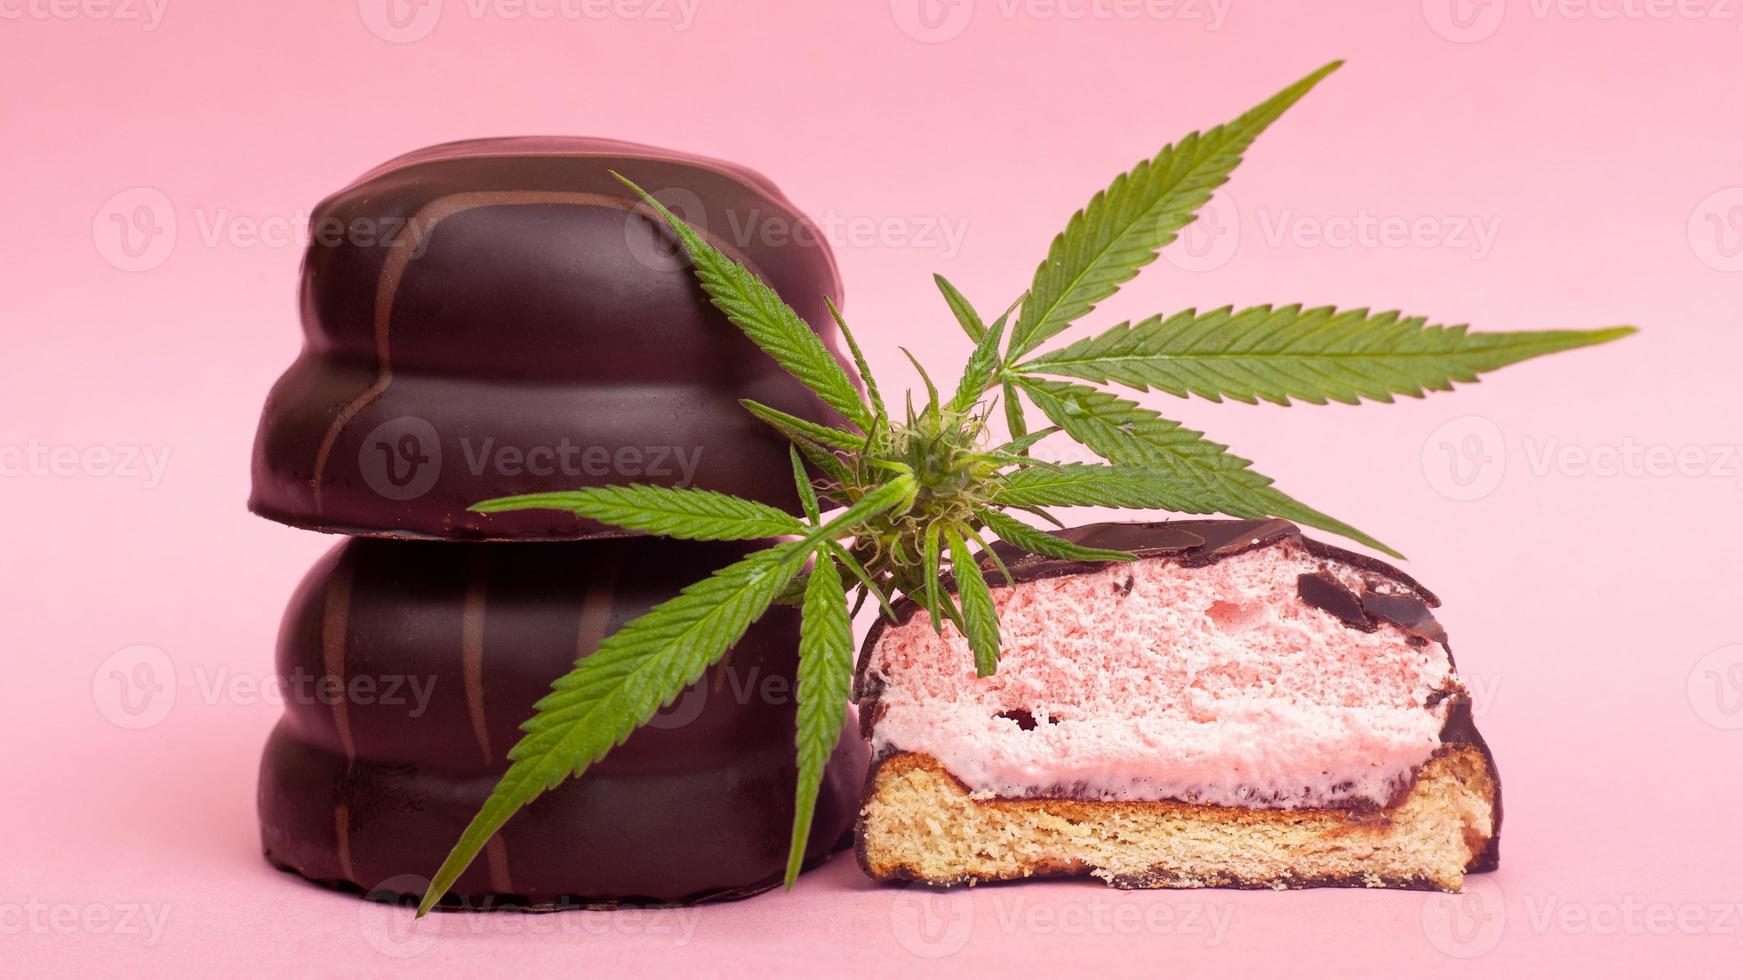 medische chocoladesnoepjes met thc op een roze achtergrond foto